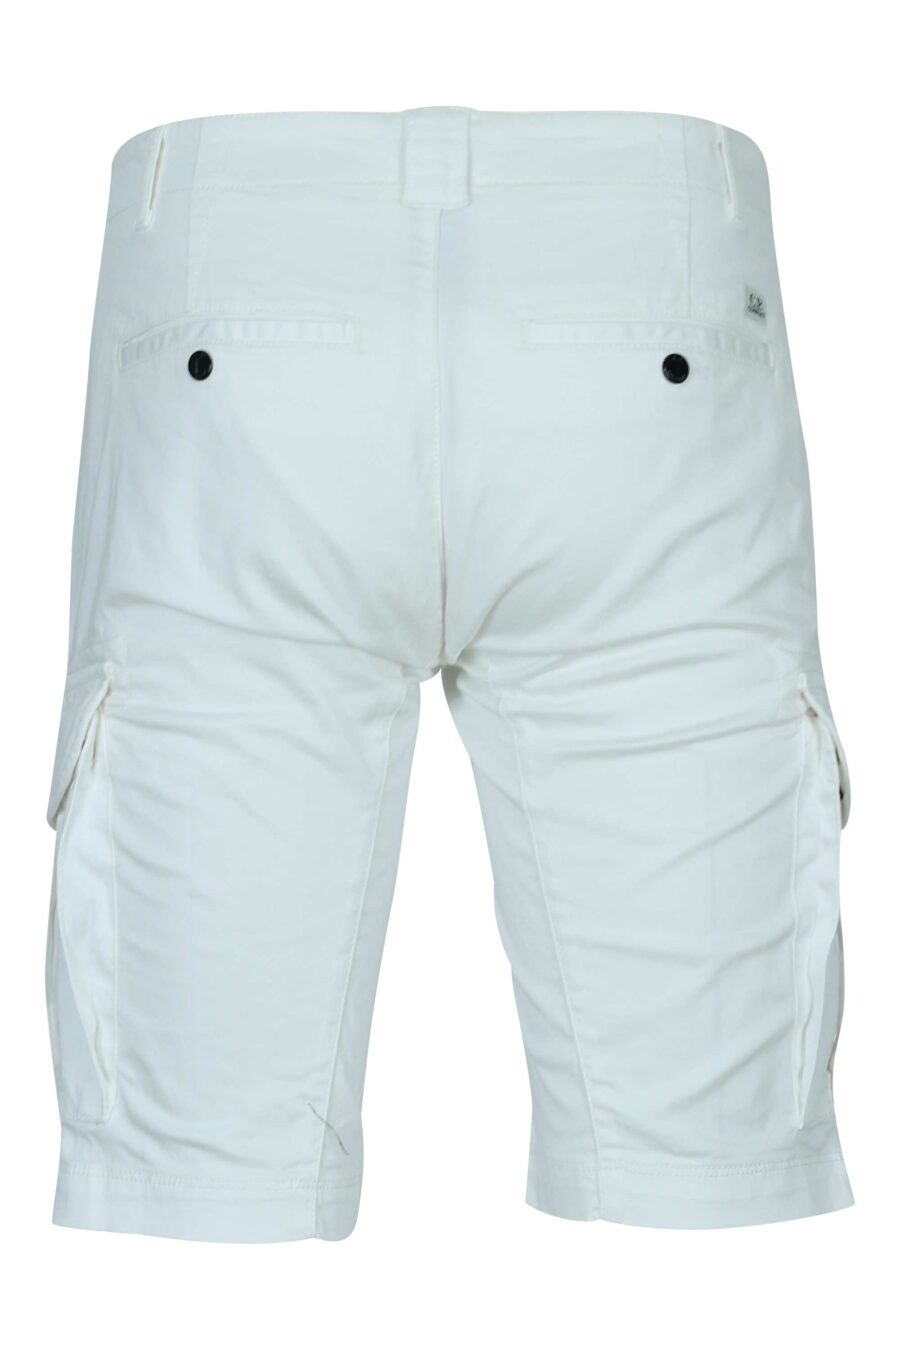 Pantalón corto blanco estilo cargo con minilogo lente - 7620943697735 1